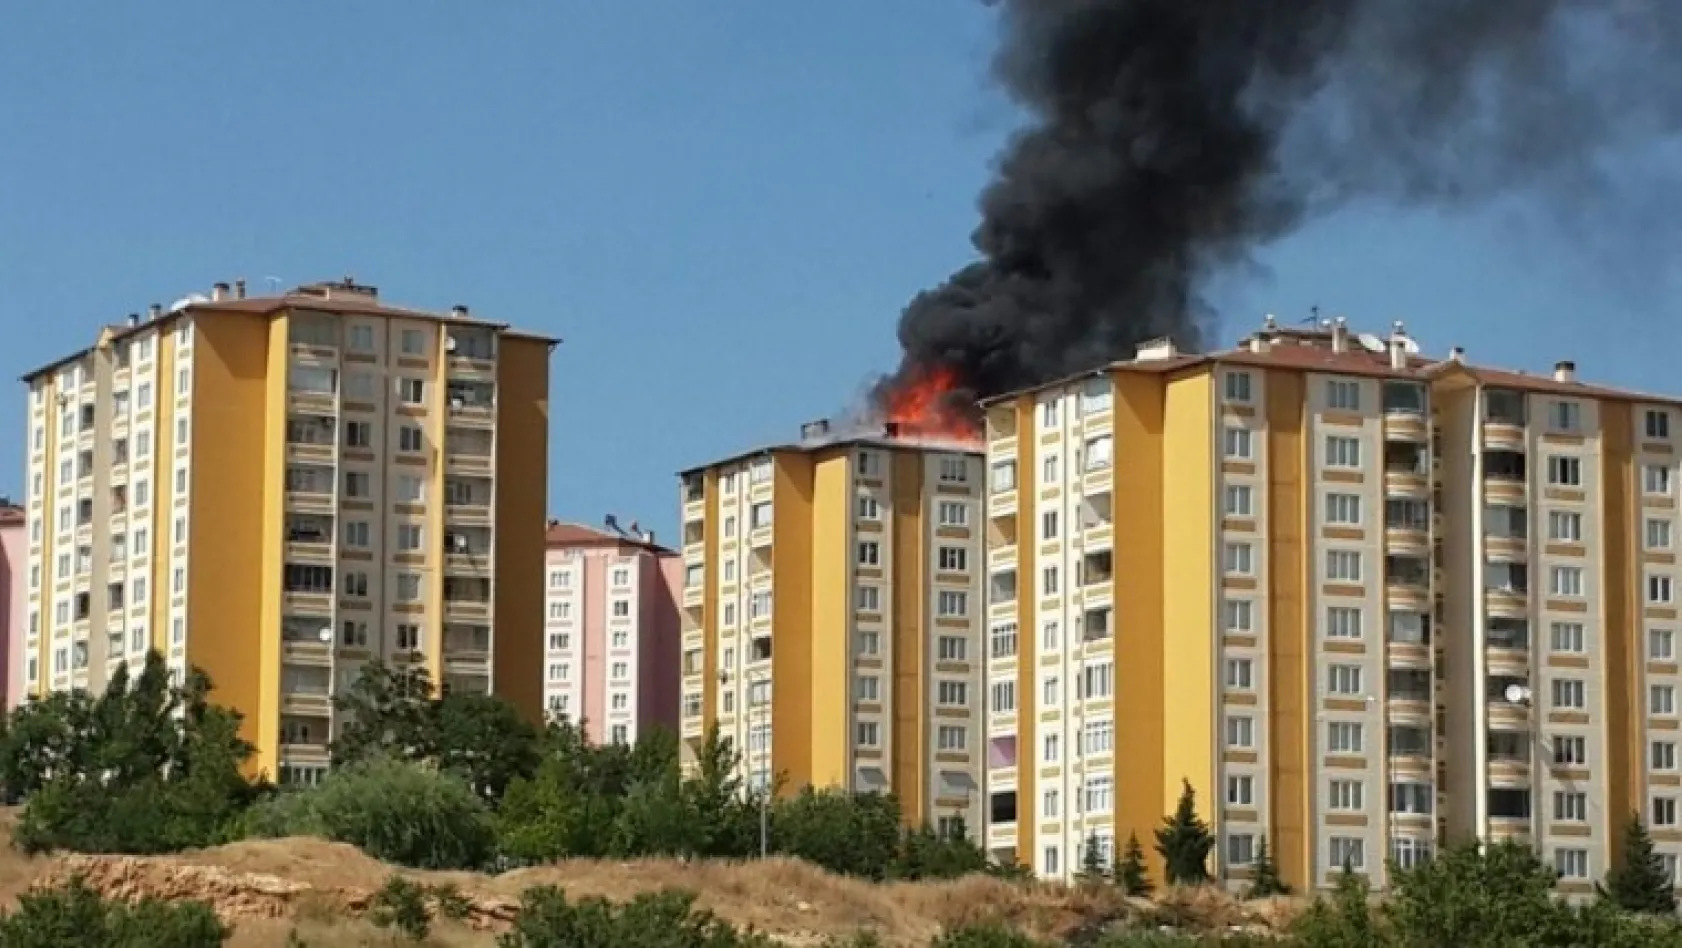 10 katlı binadaki yangının nedeni belli oldu